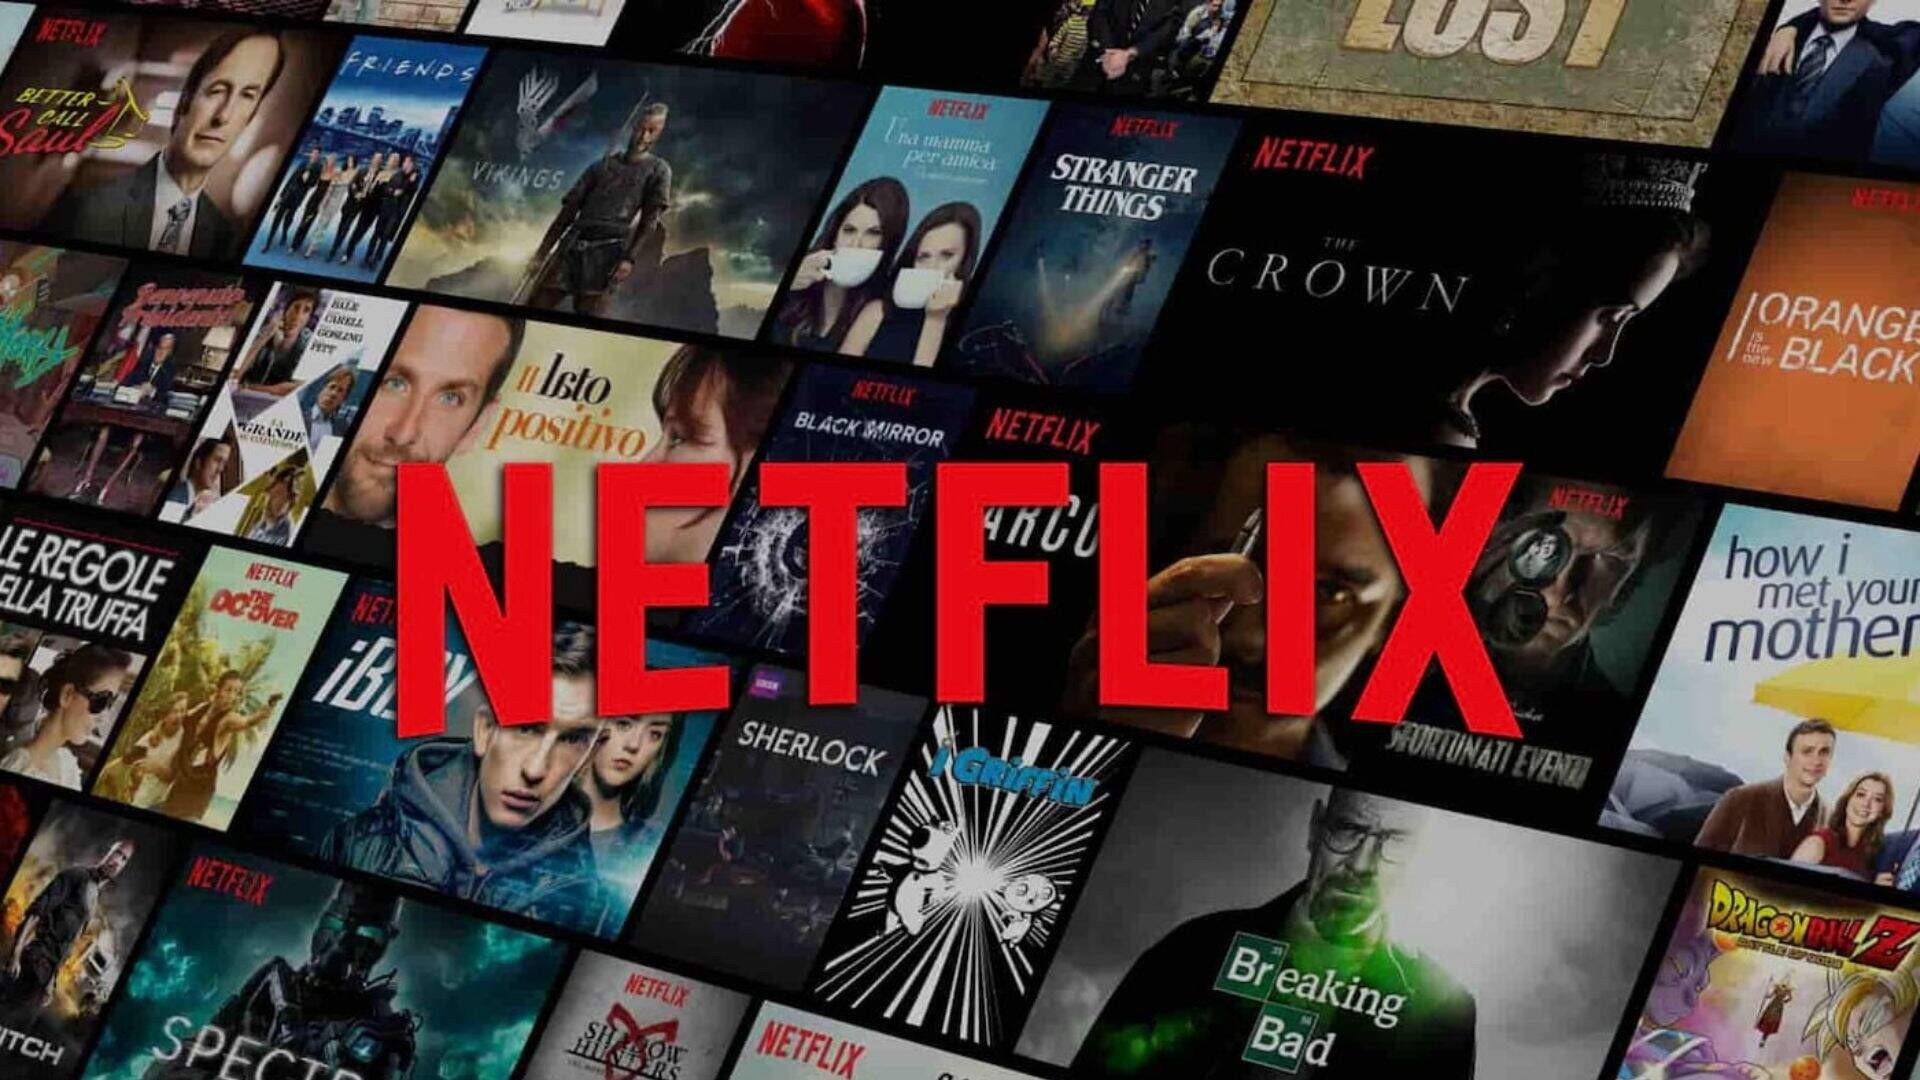 Está falindo? Netflix cancela opção de plano básico no Brasil e atitude preocupa usuários do streaming - Metropolitana FM